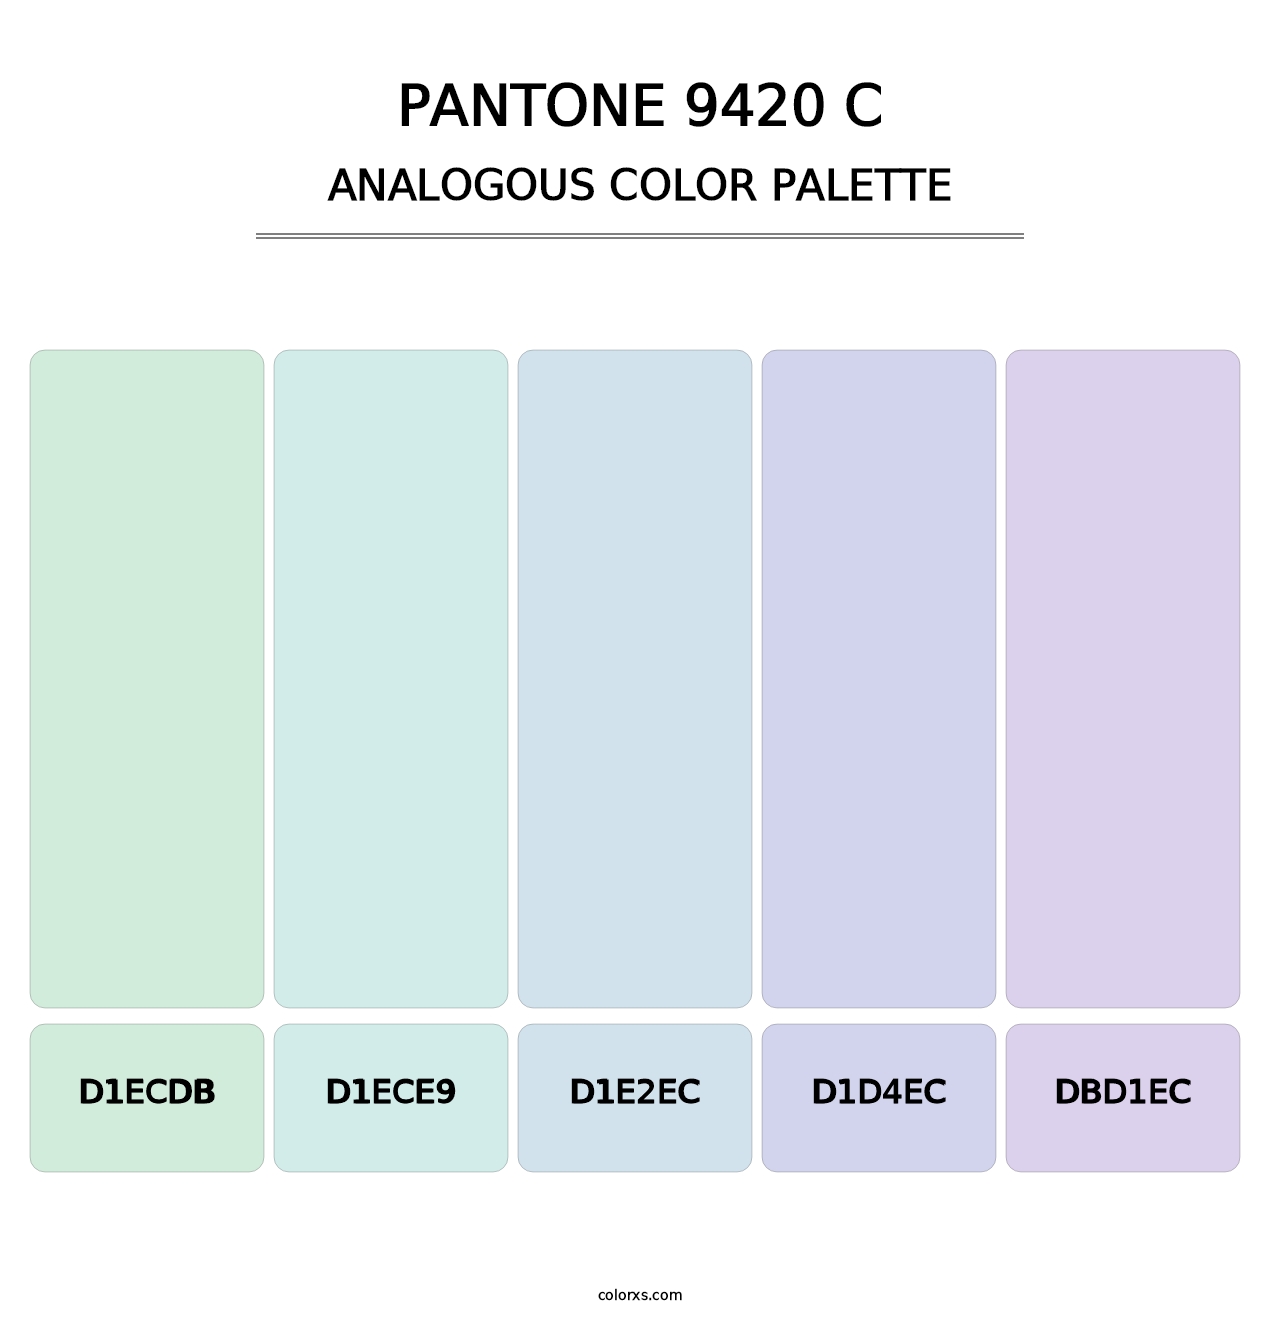 PANTONE 9420 C - Analogous Color Palette